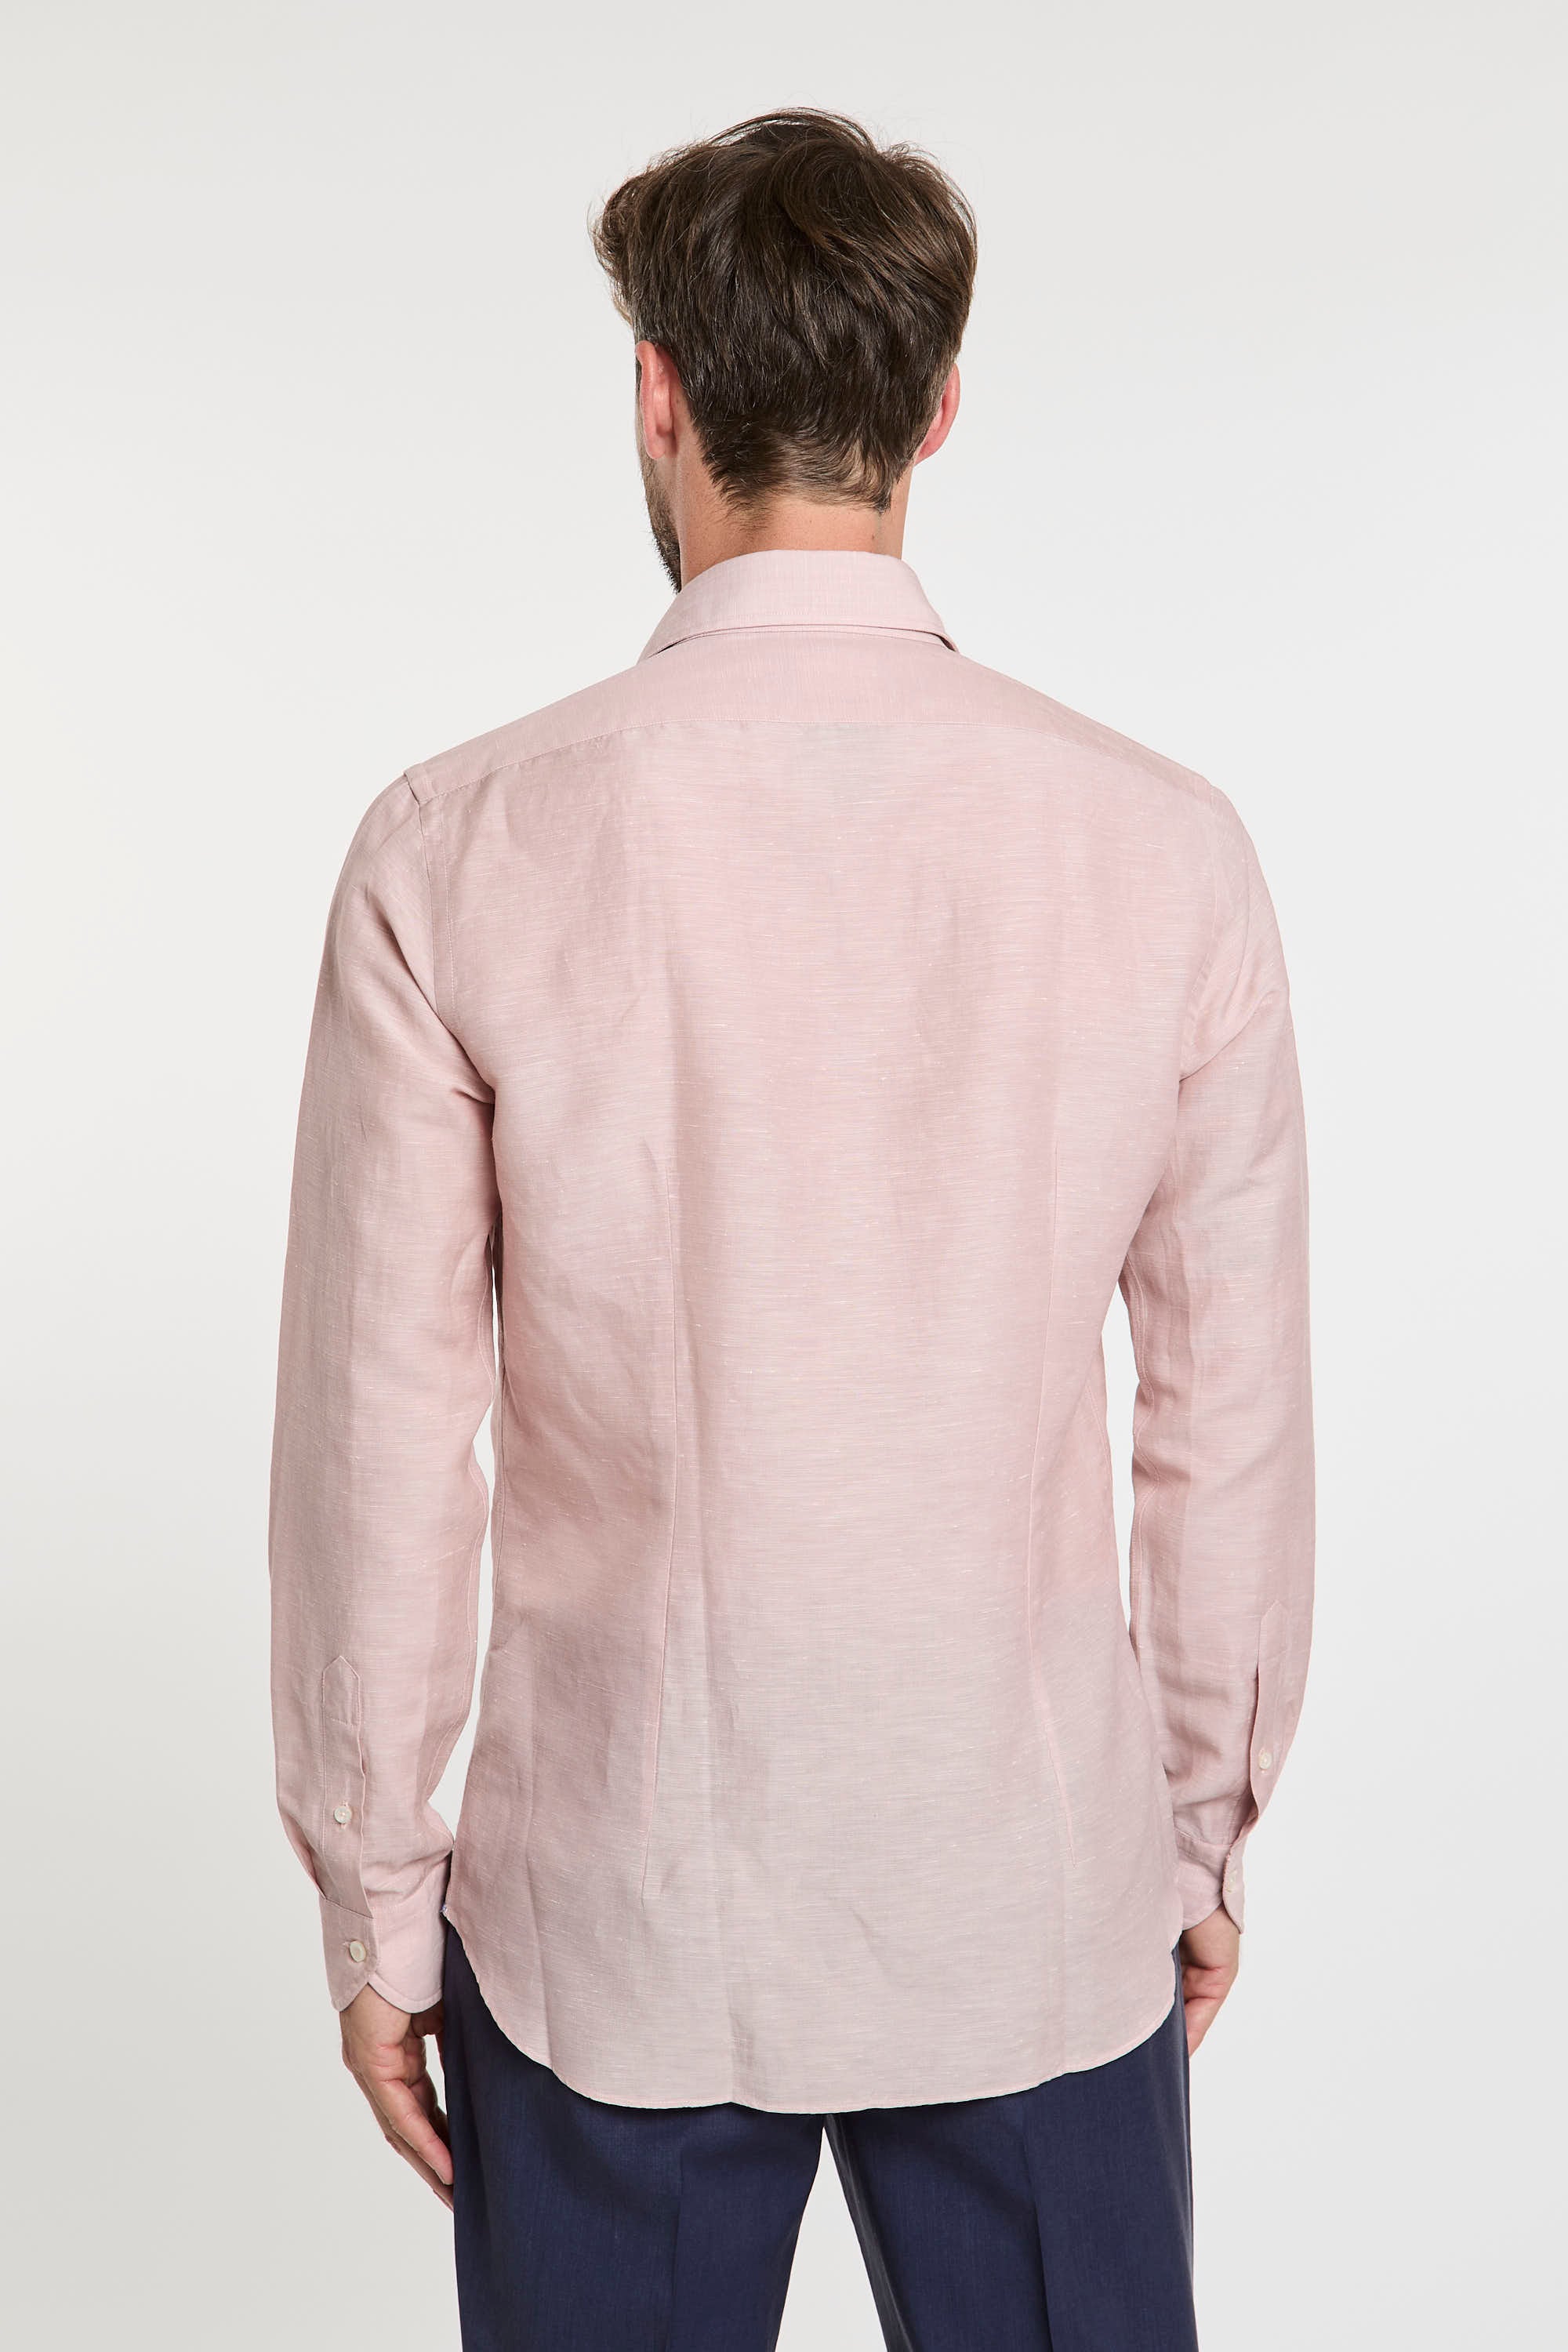 Xacus Wool and Linen Blend Pink Shirt-7